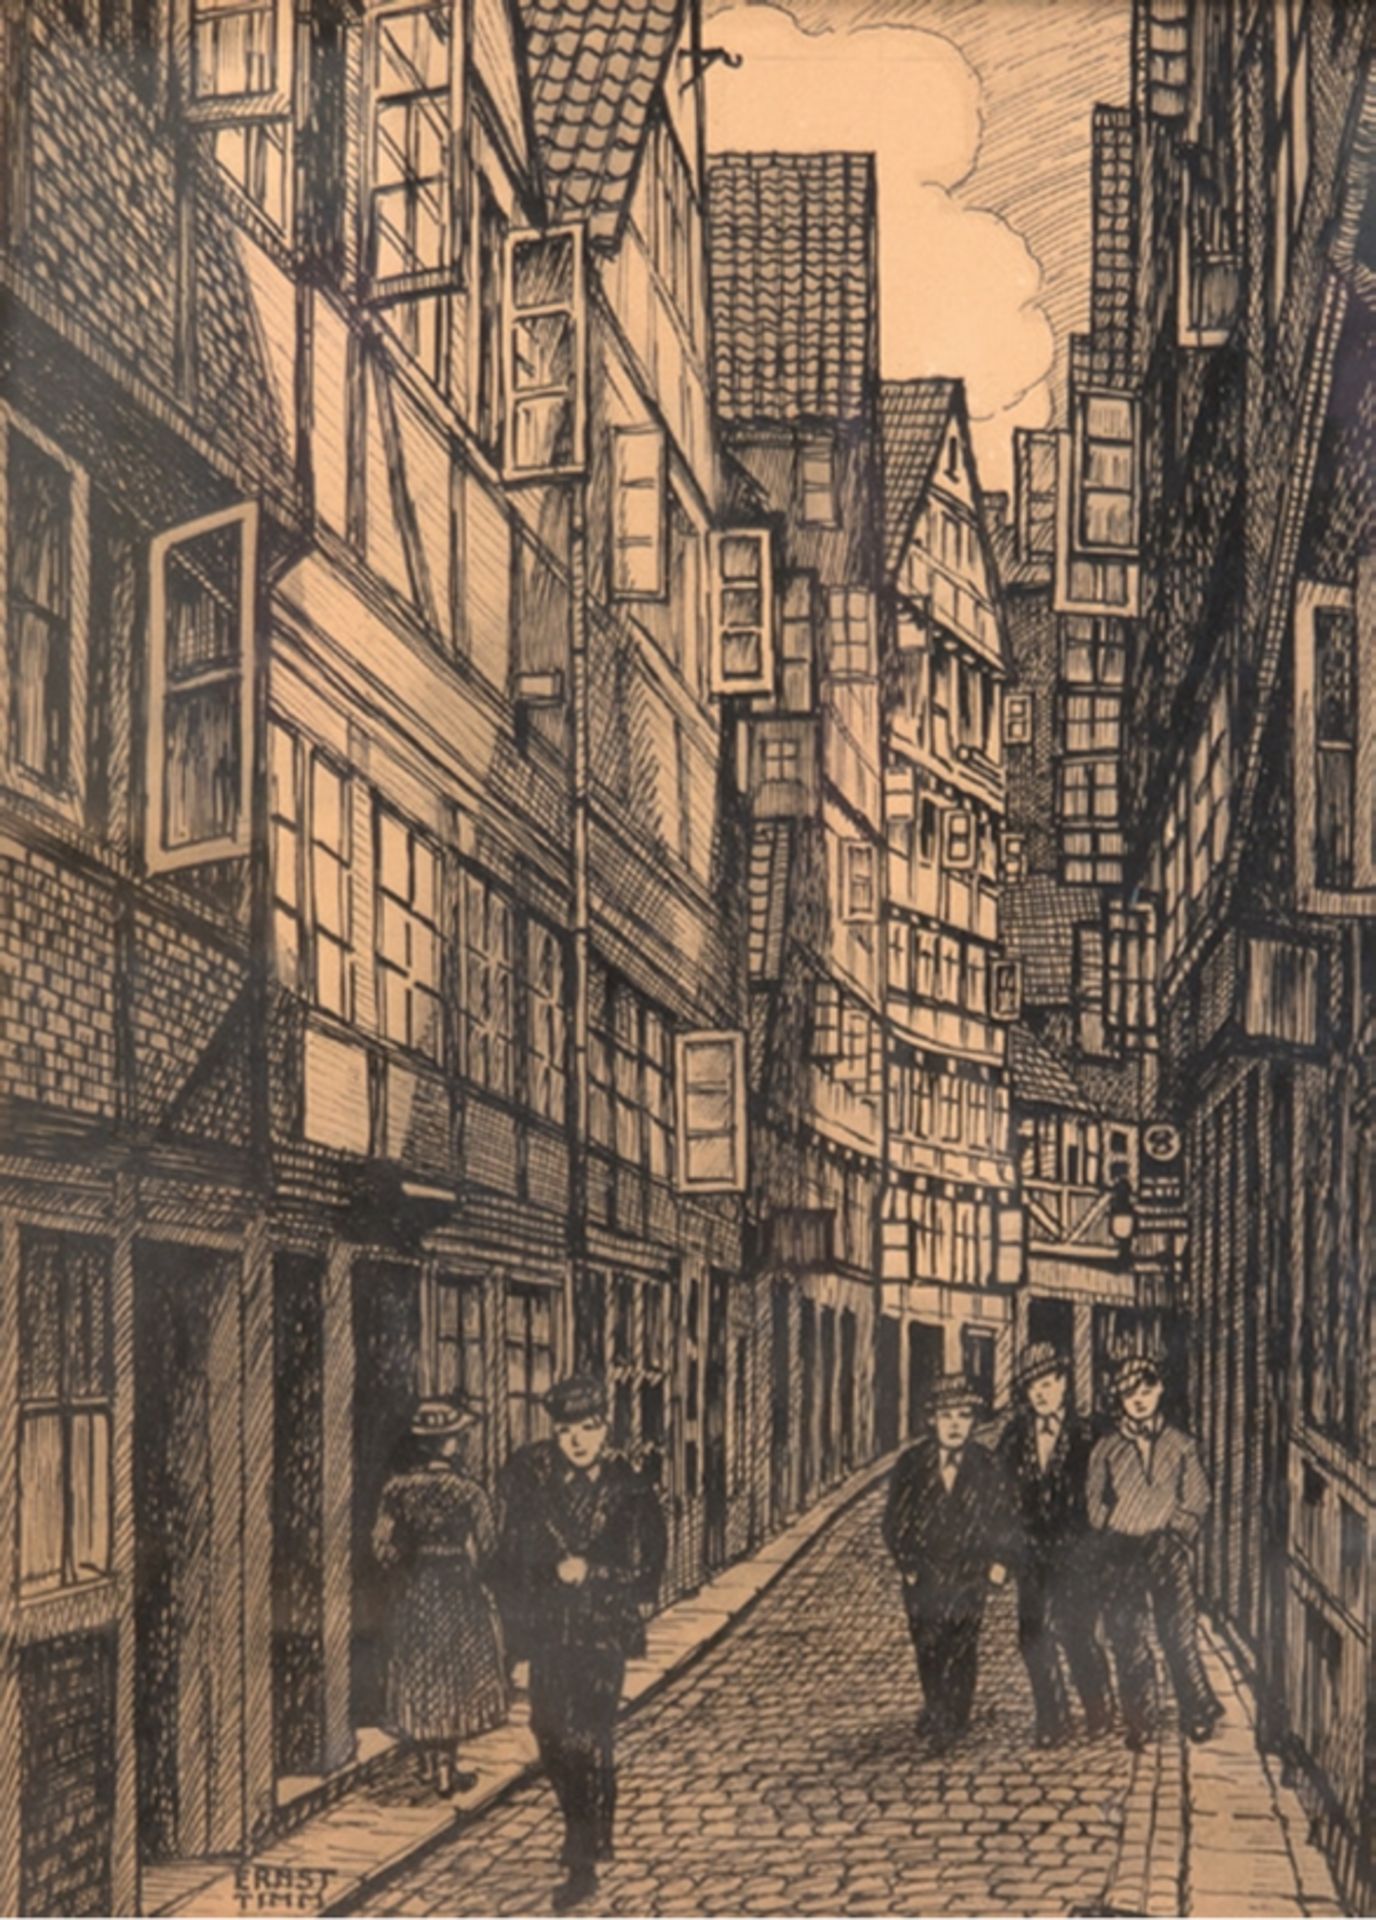 Timm, Ernst (Hamburger Künstler um 1920) "Hamburger Altstadt", Holzschnitt, 31,5x21,5 cm, im Passep